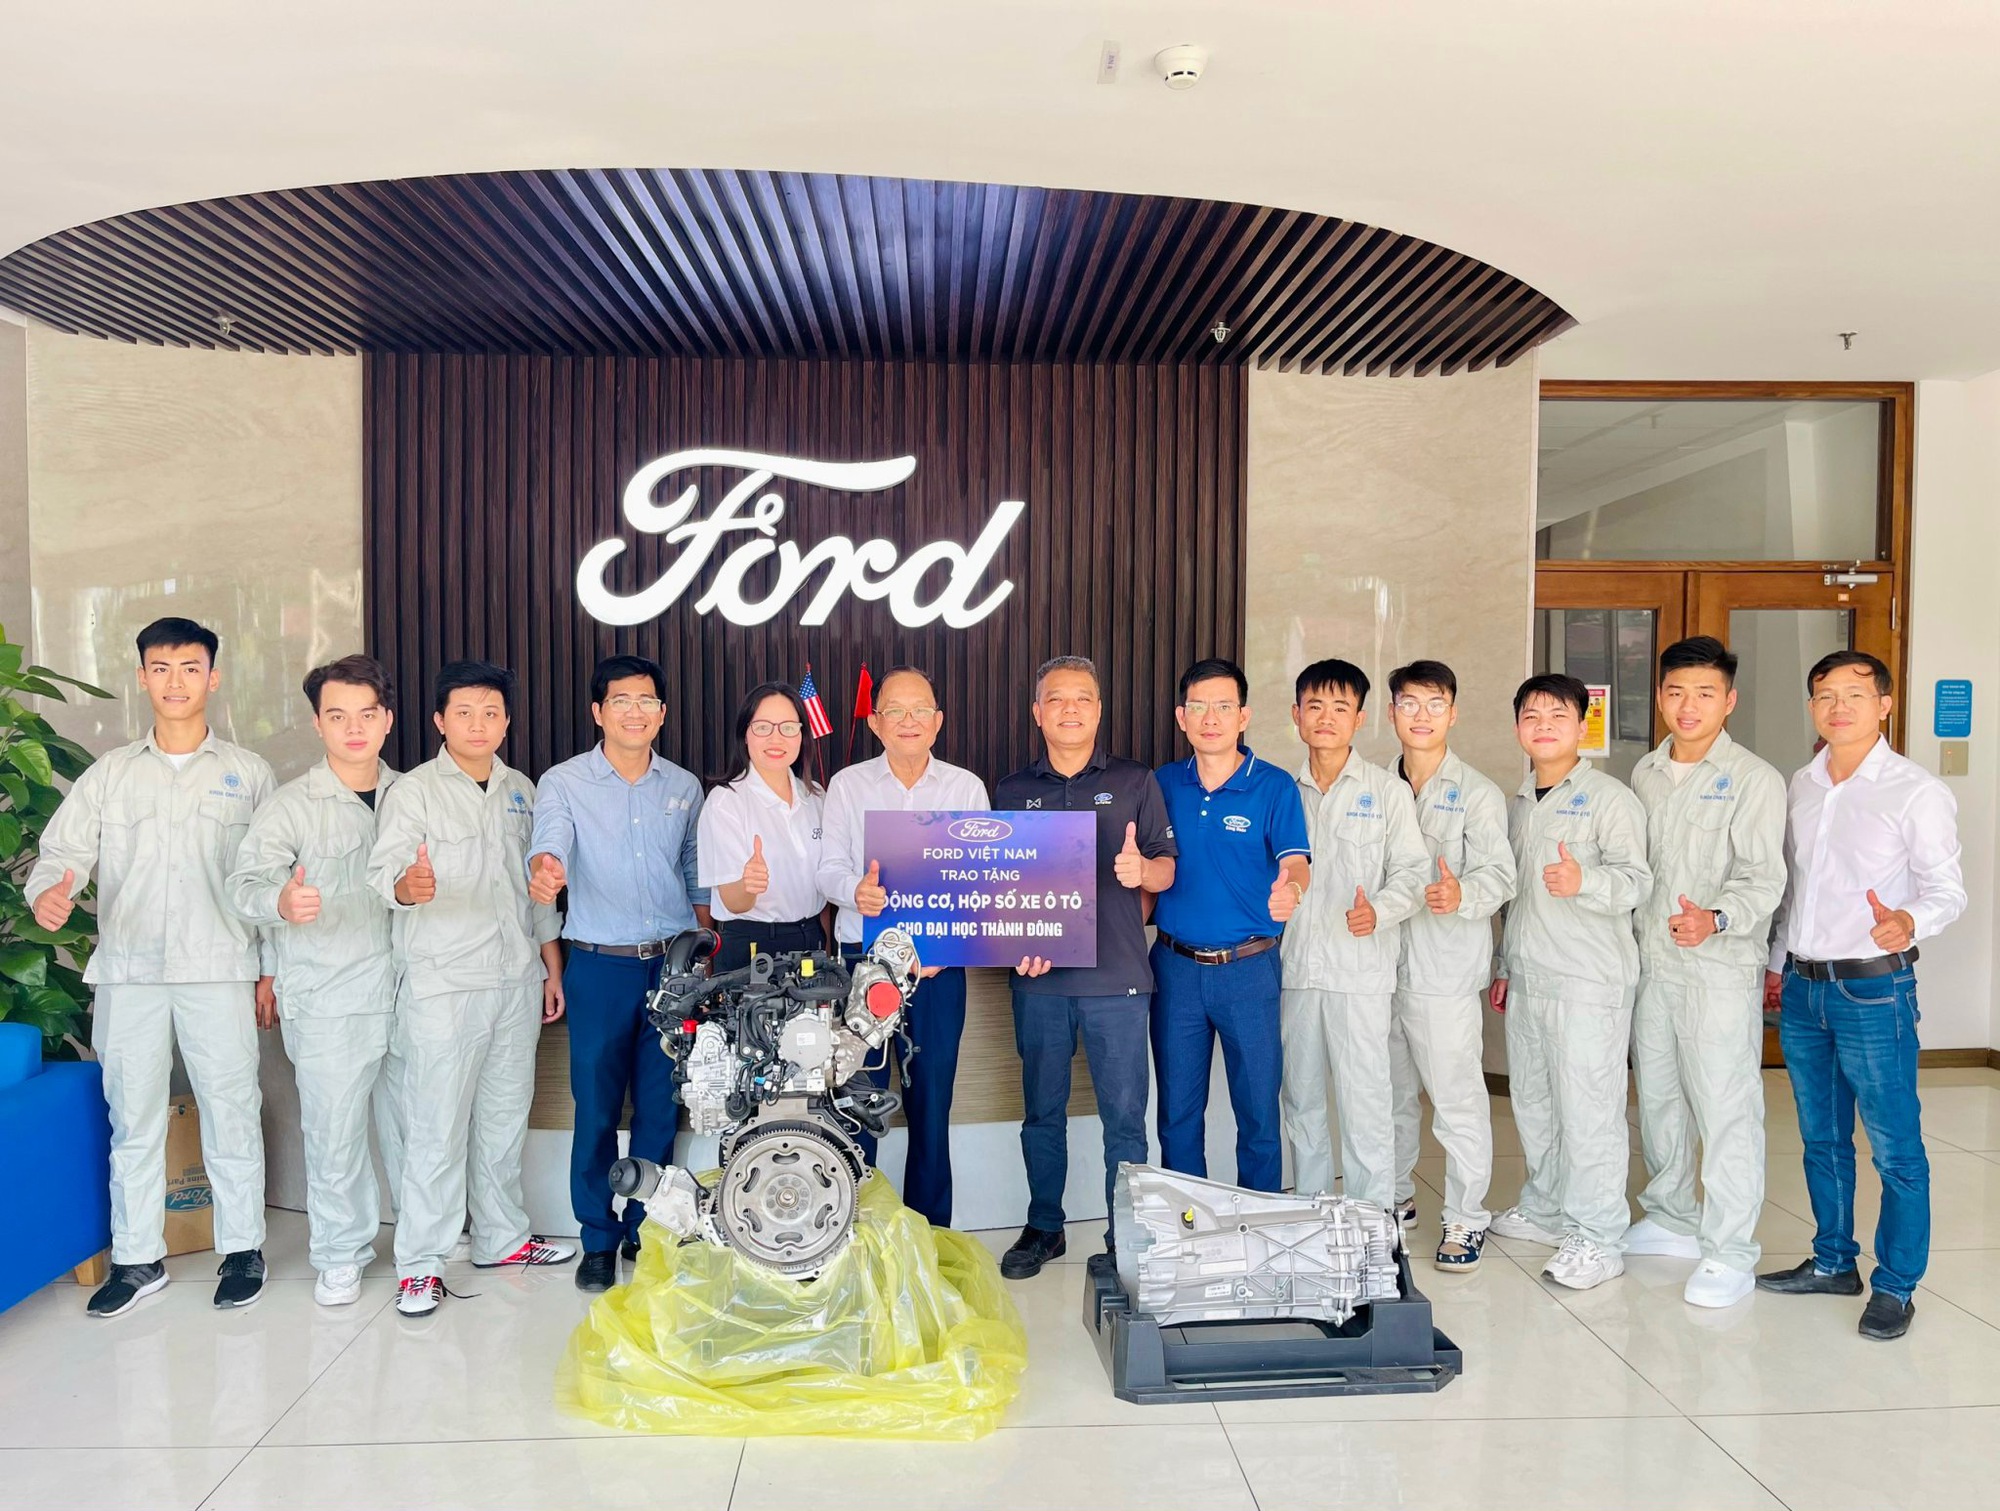 Ford Việt Nam Trao Tặng Động Cơ, Hộp Số cho các trường đại học - Ảnh 2.